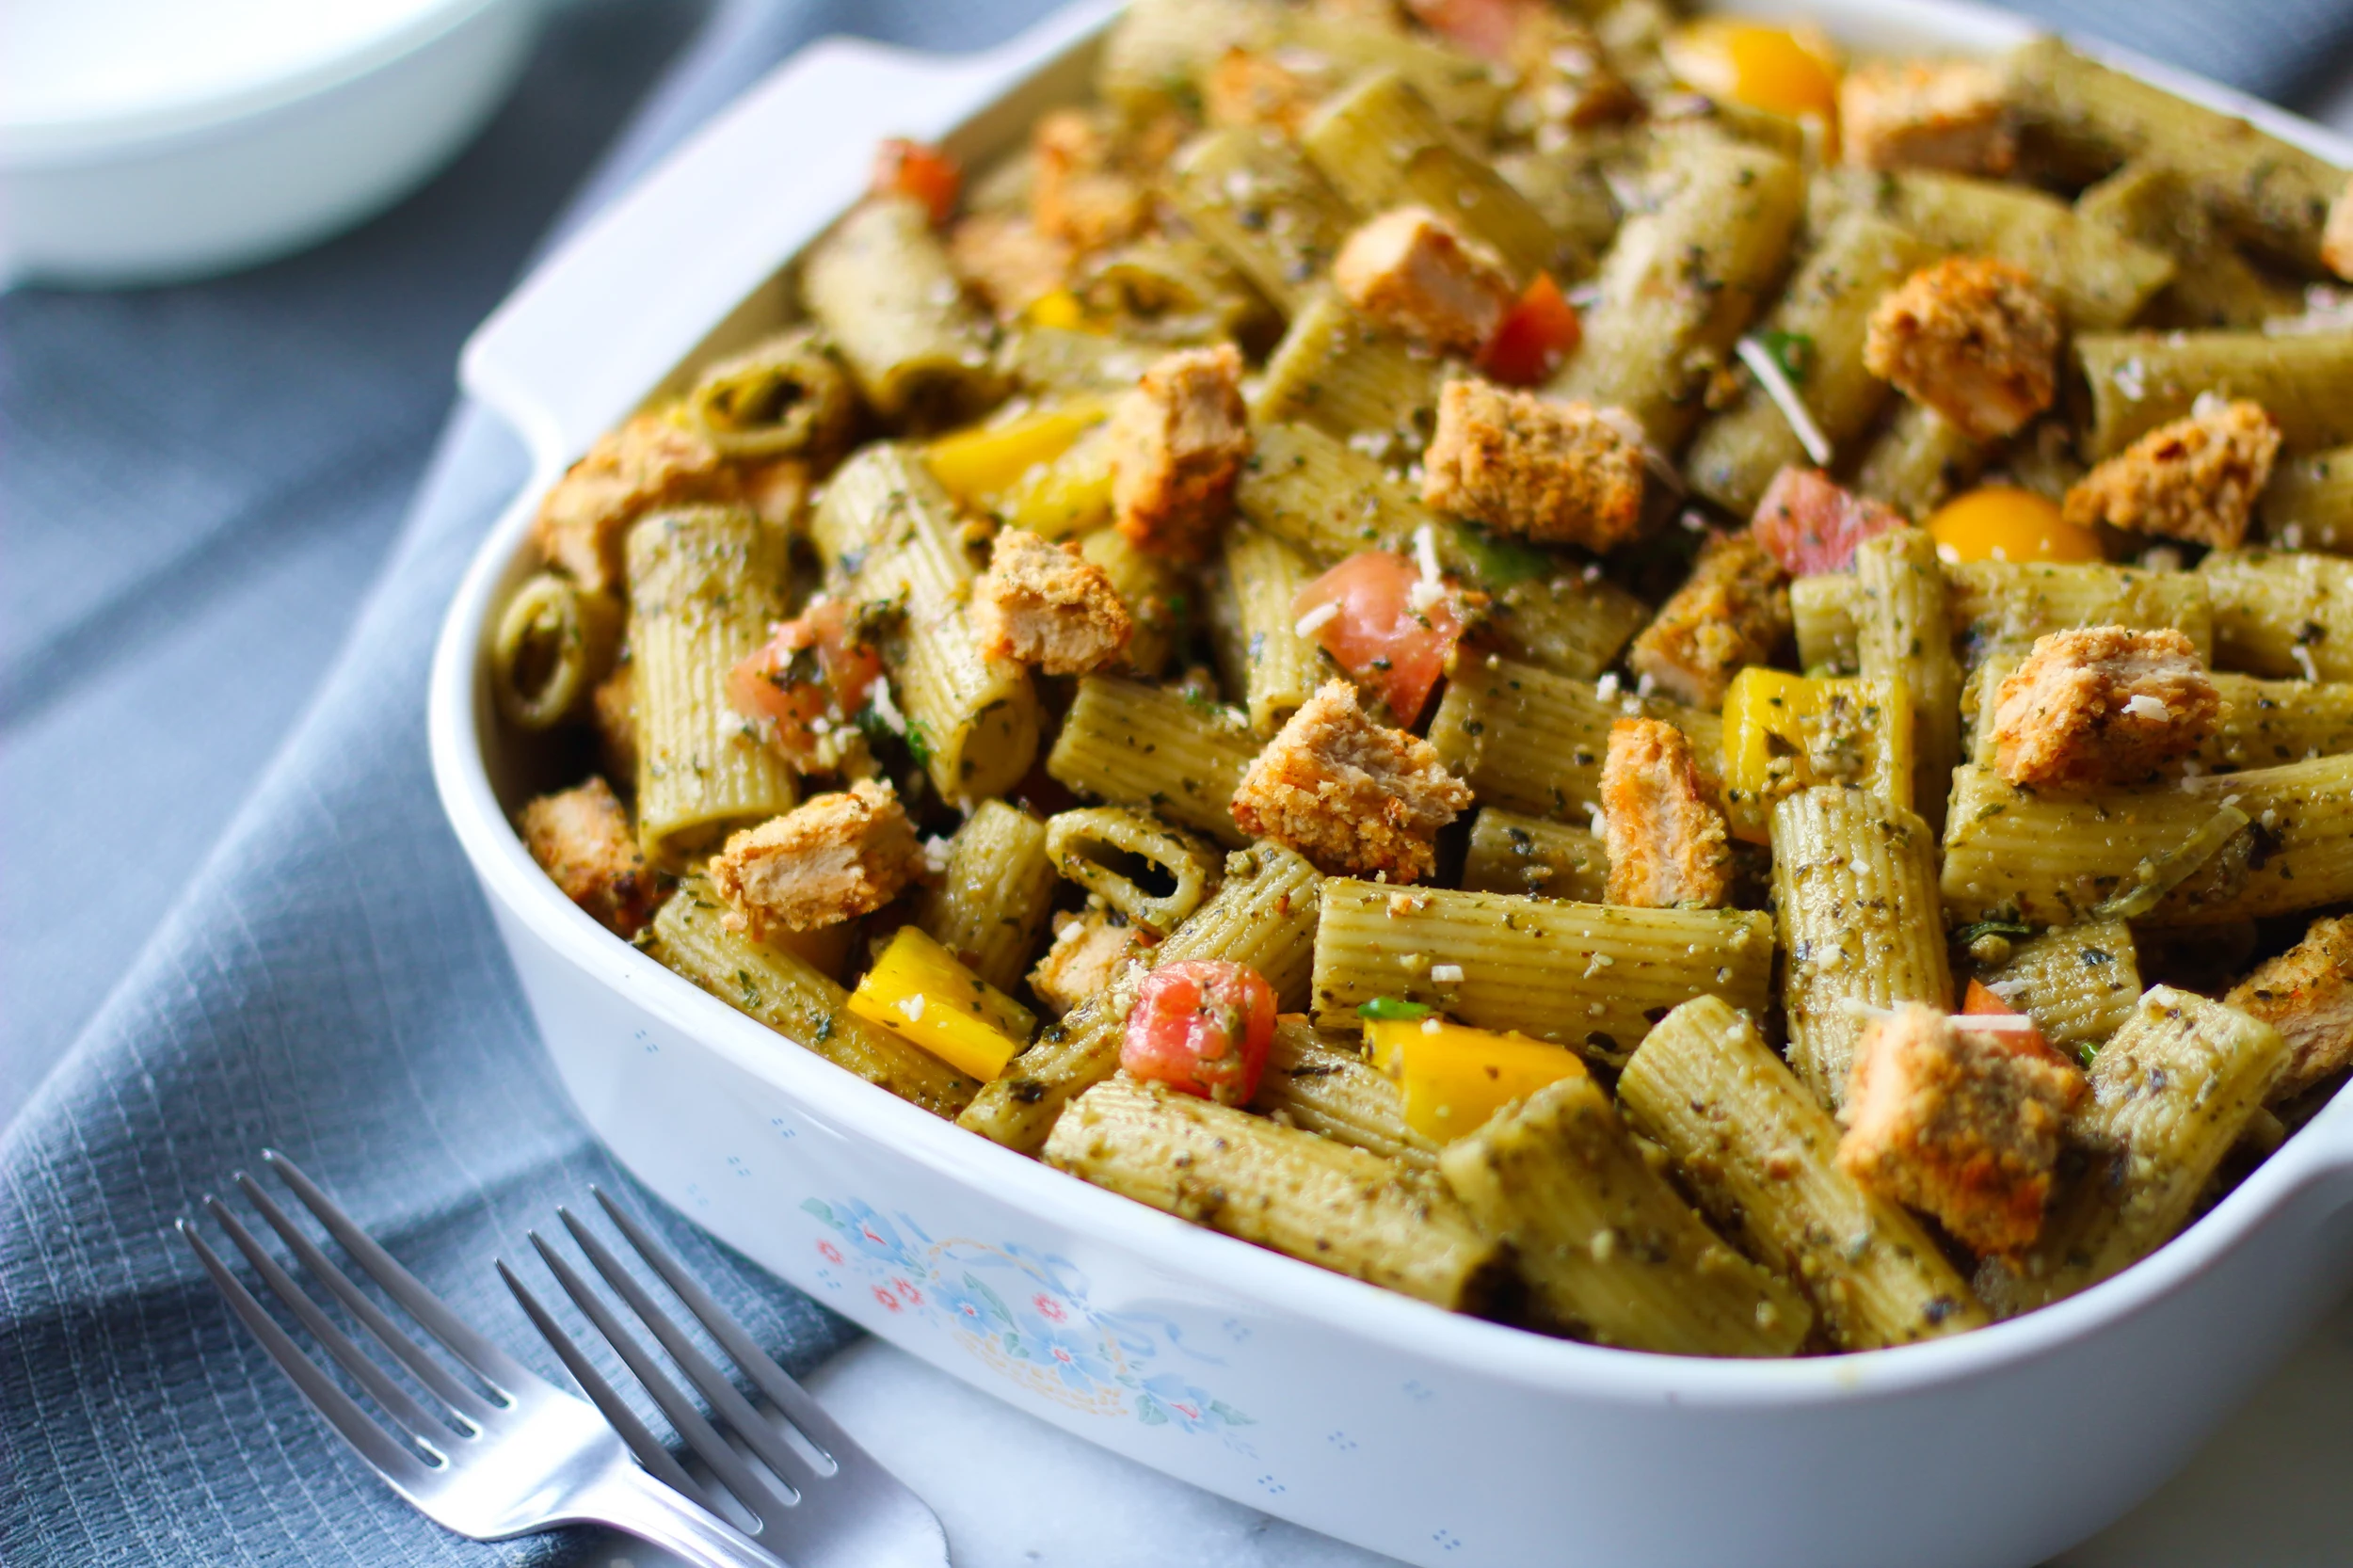 Vegan Pesto Pasta Salad With Quorn's Meatless Spicy Vegan Patties | The Beet